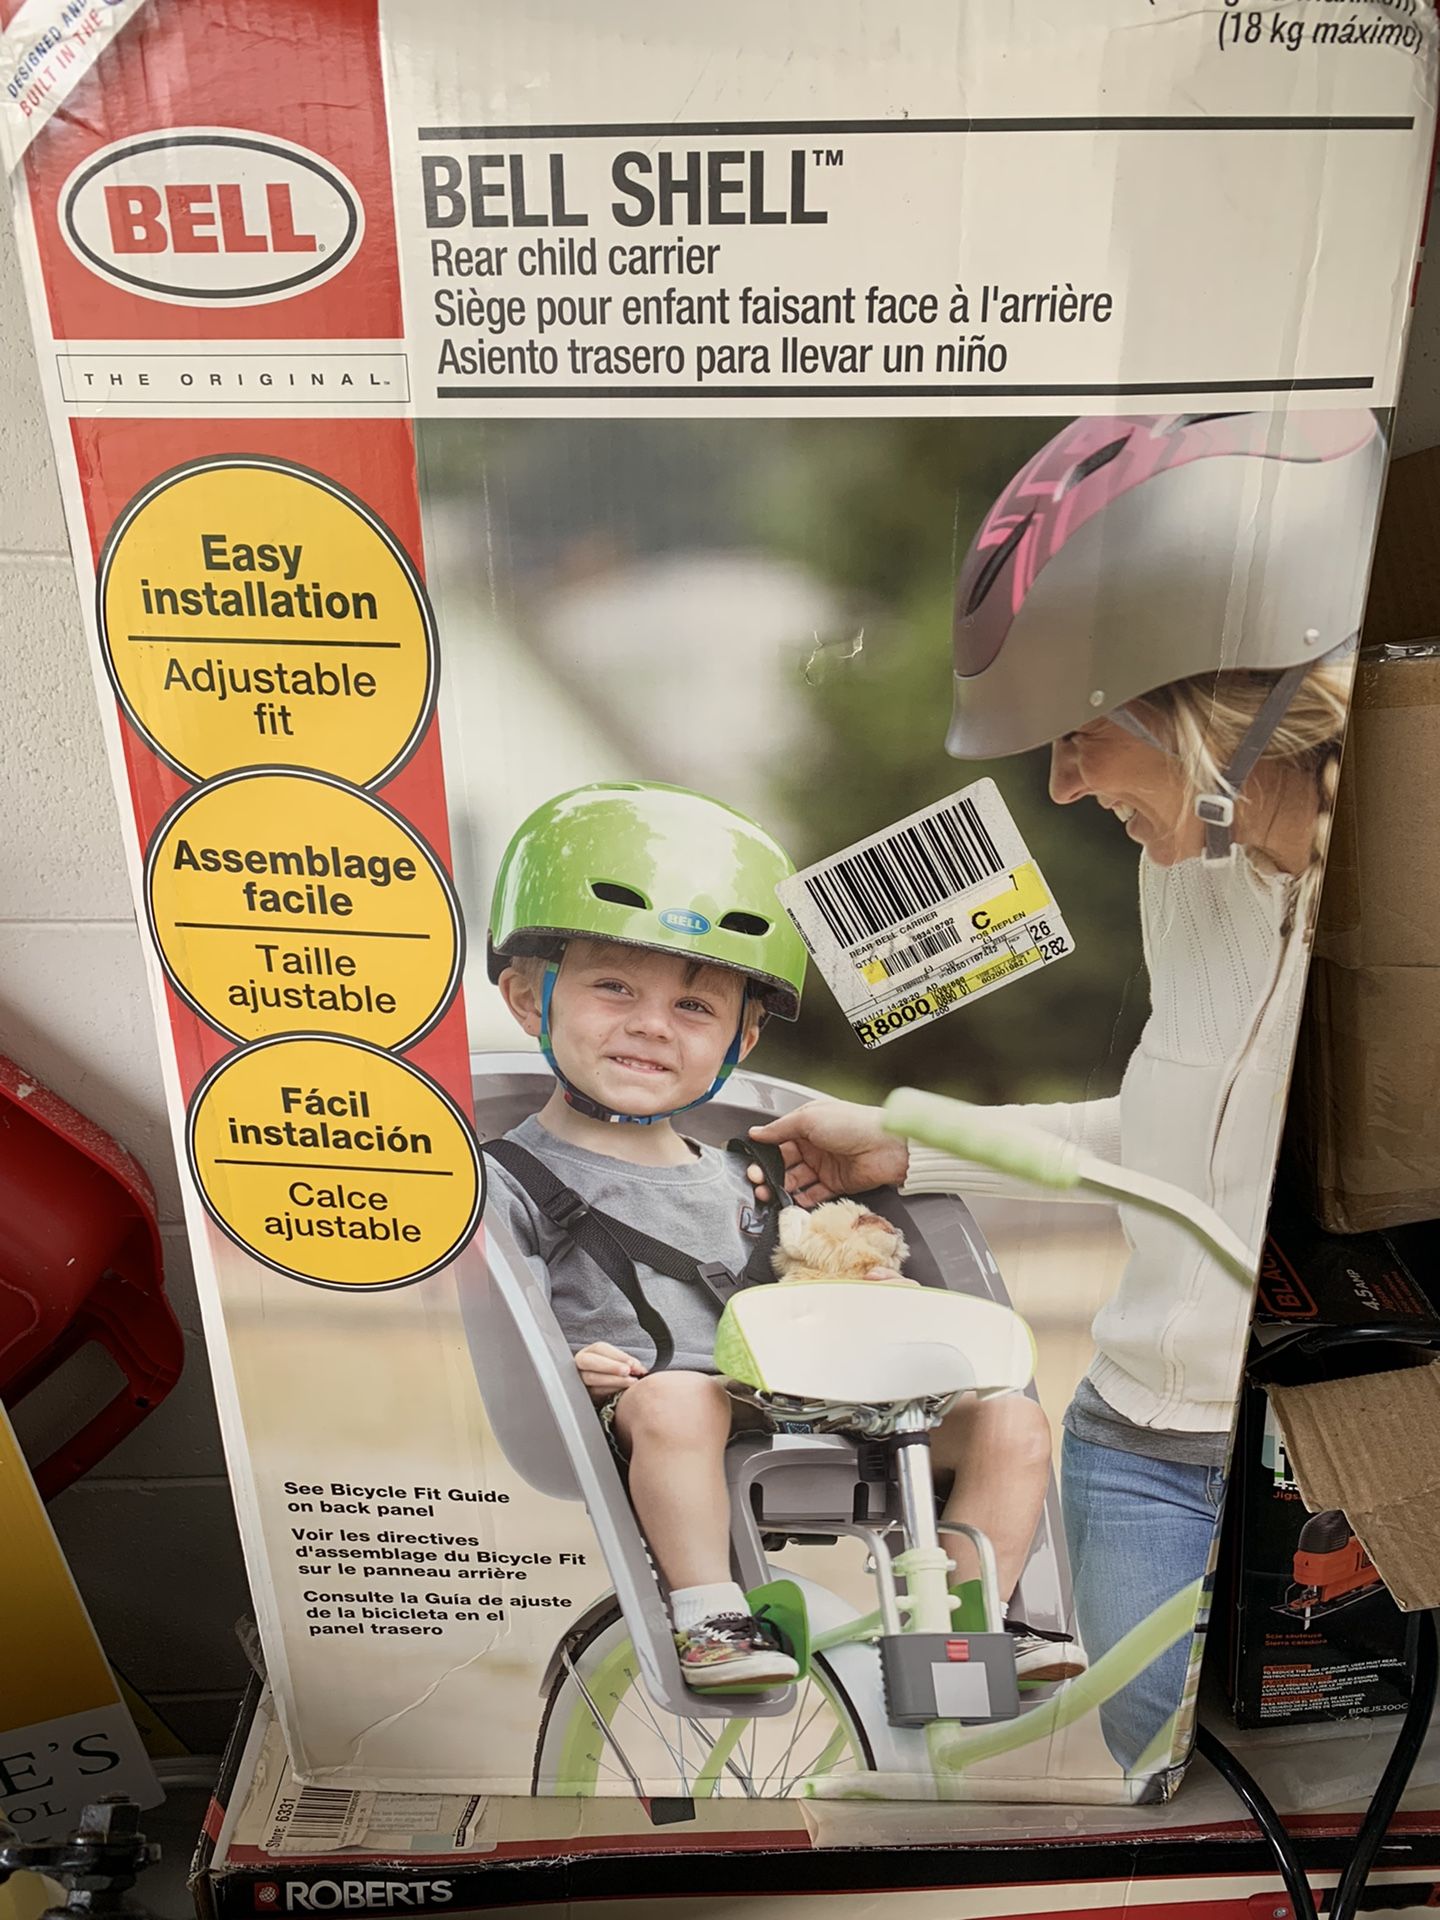 Bell shell Rear Bike Child Carrier